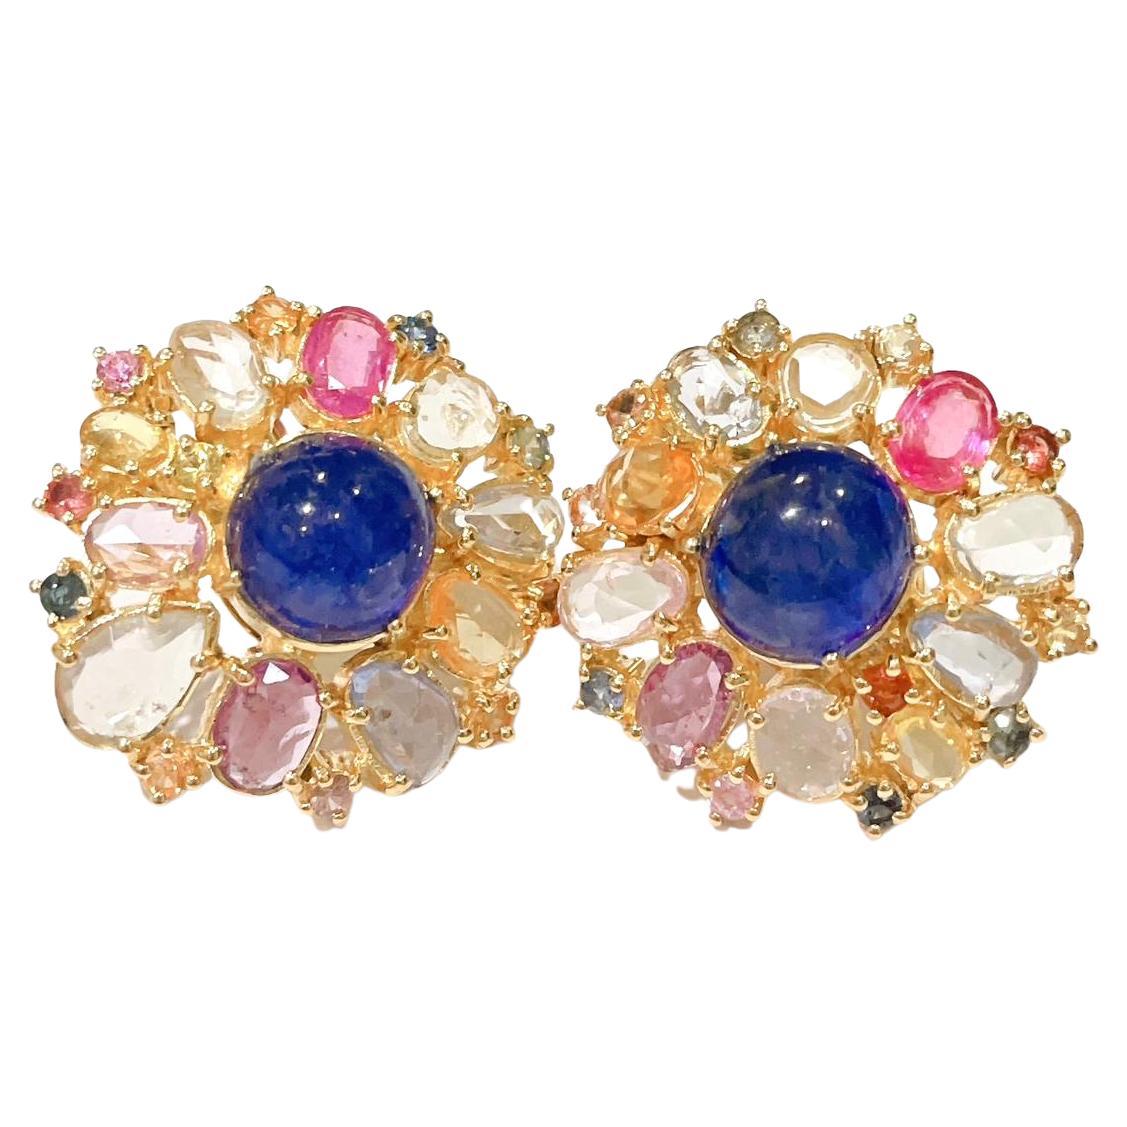 Bochic “Capri” Ruby & Rose Cut Sapphire Earrings Set in 18k Gold & Silver